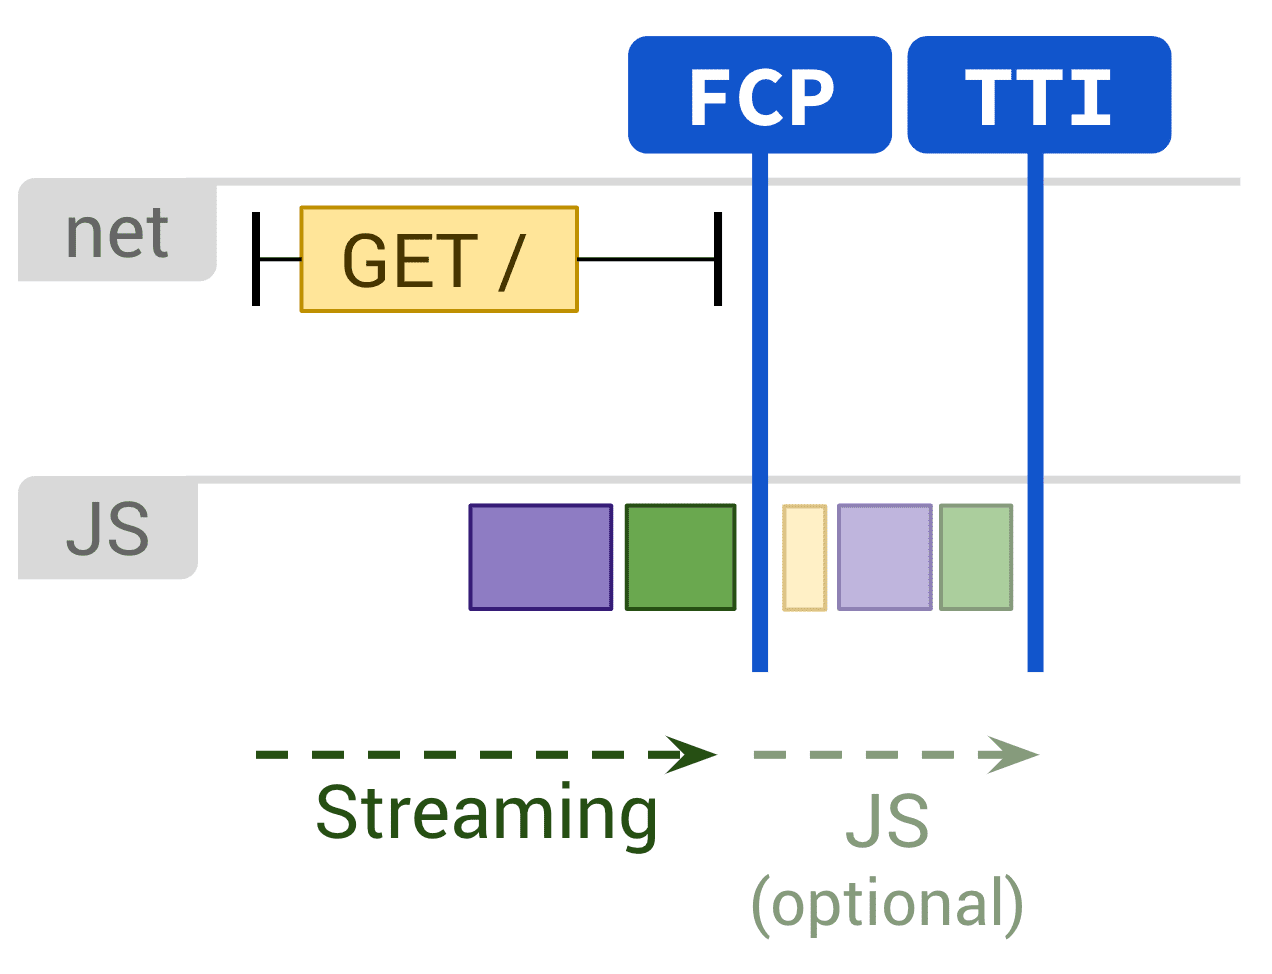 Diagrama mostrando renderização estática e execução opcional de JS afetando FCP e TTI.